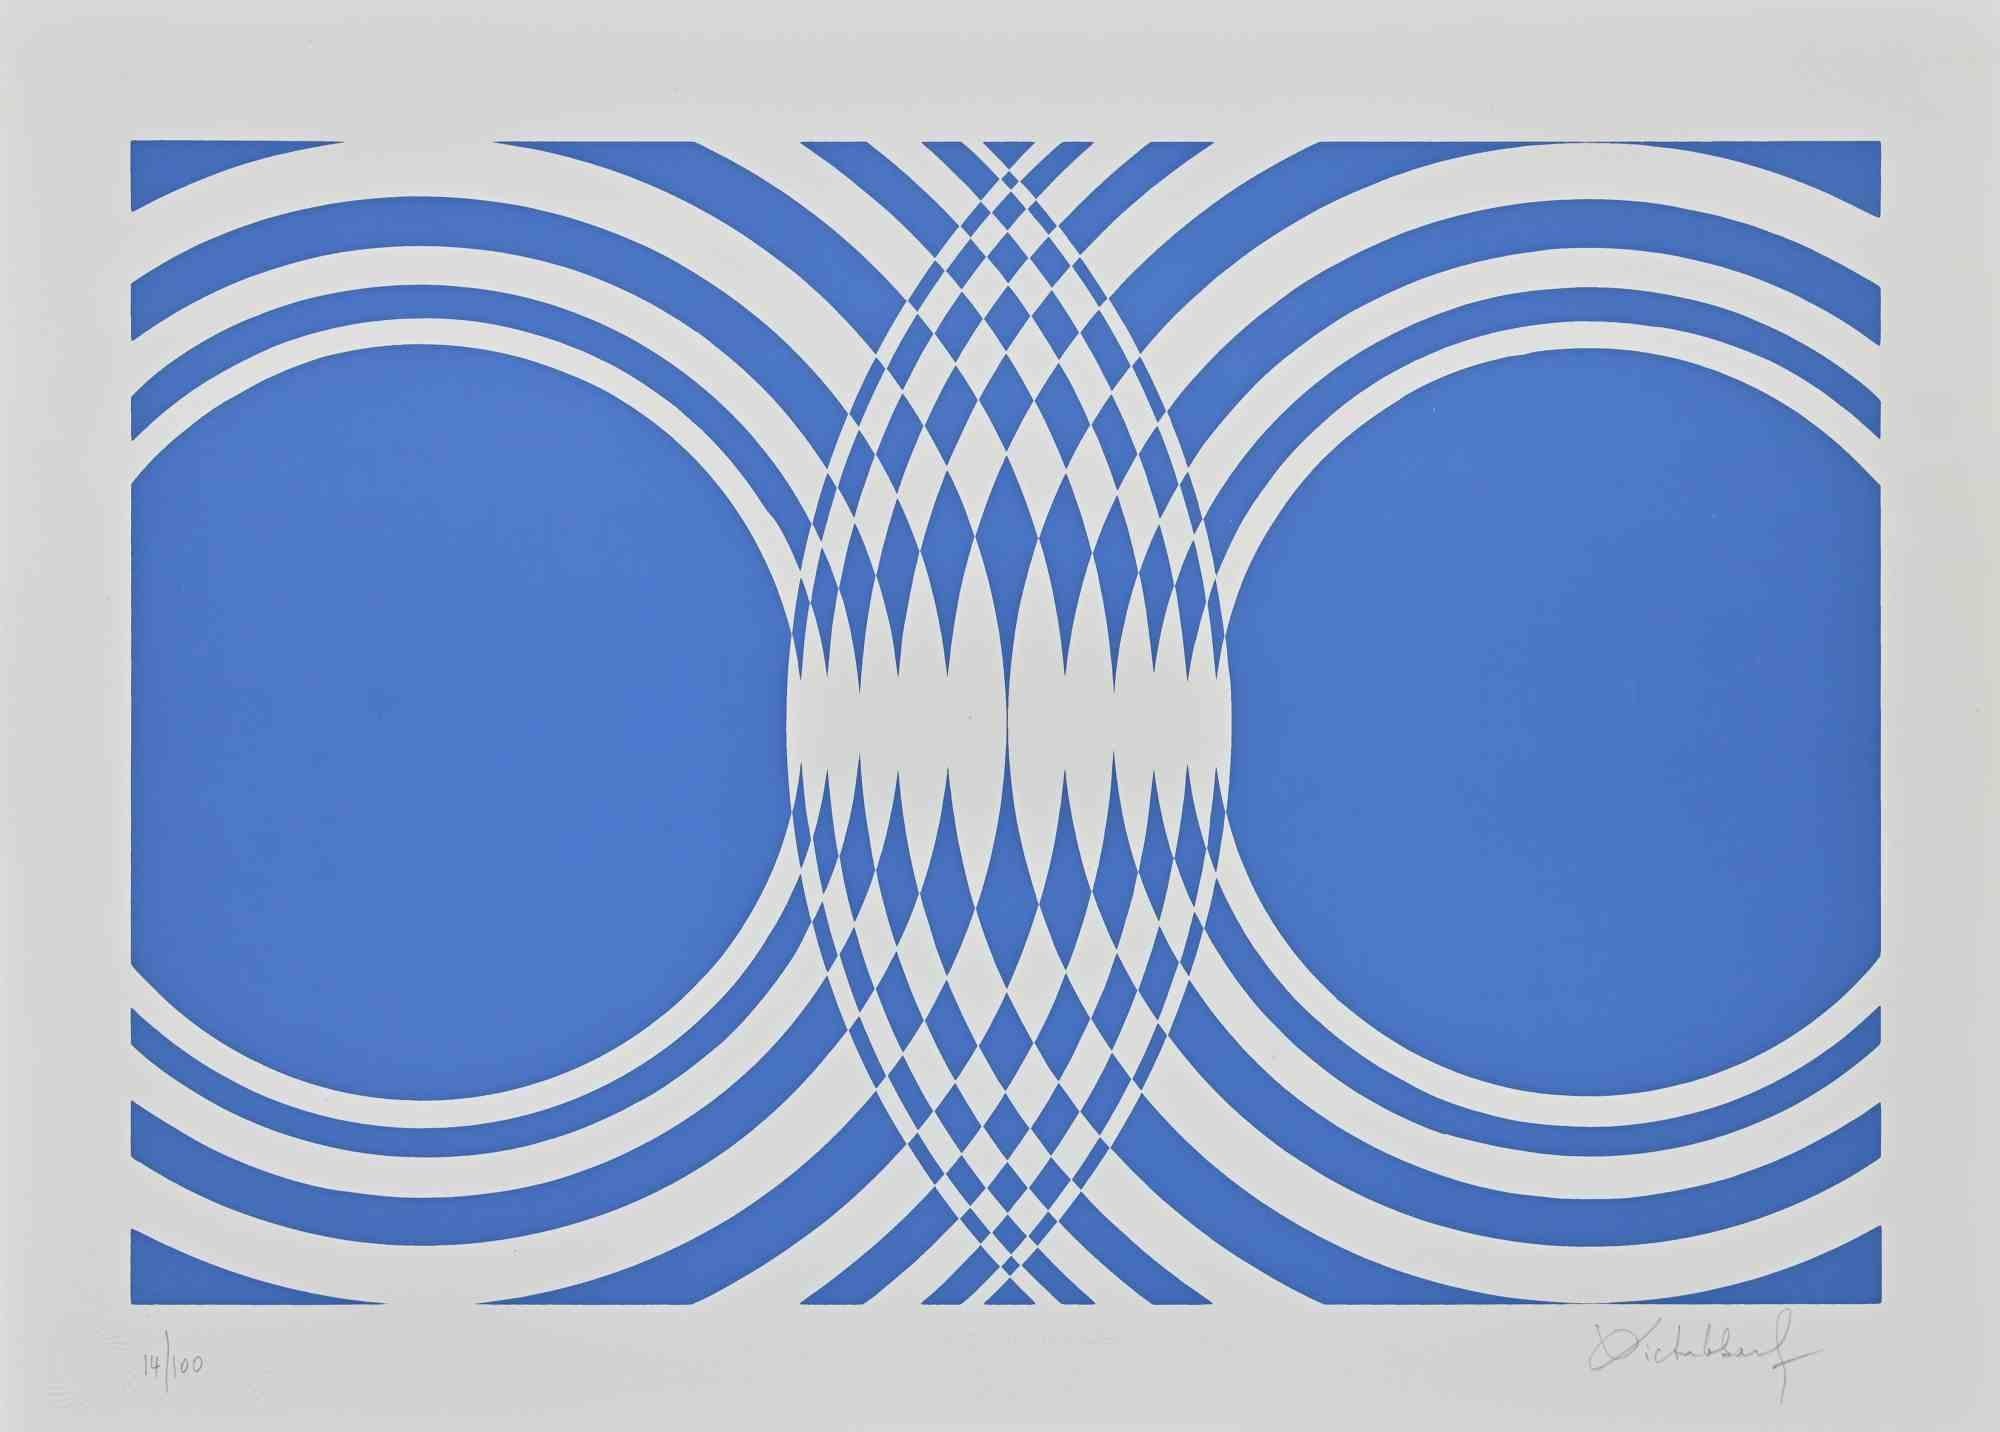 Blue Composition est une œuvre d'art contemporaine originale réalisée par Victor Debach dans les années 1970.

Sérigraphie de couleurs mélangées sur papier.

Signé à la main dans la marge inférieure droite.

Numéroté en bas à gauche.

Edition de